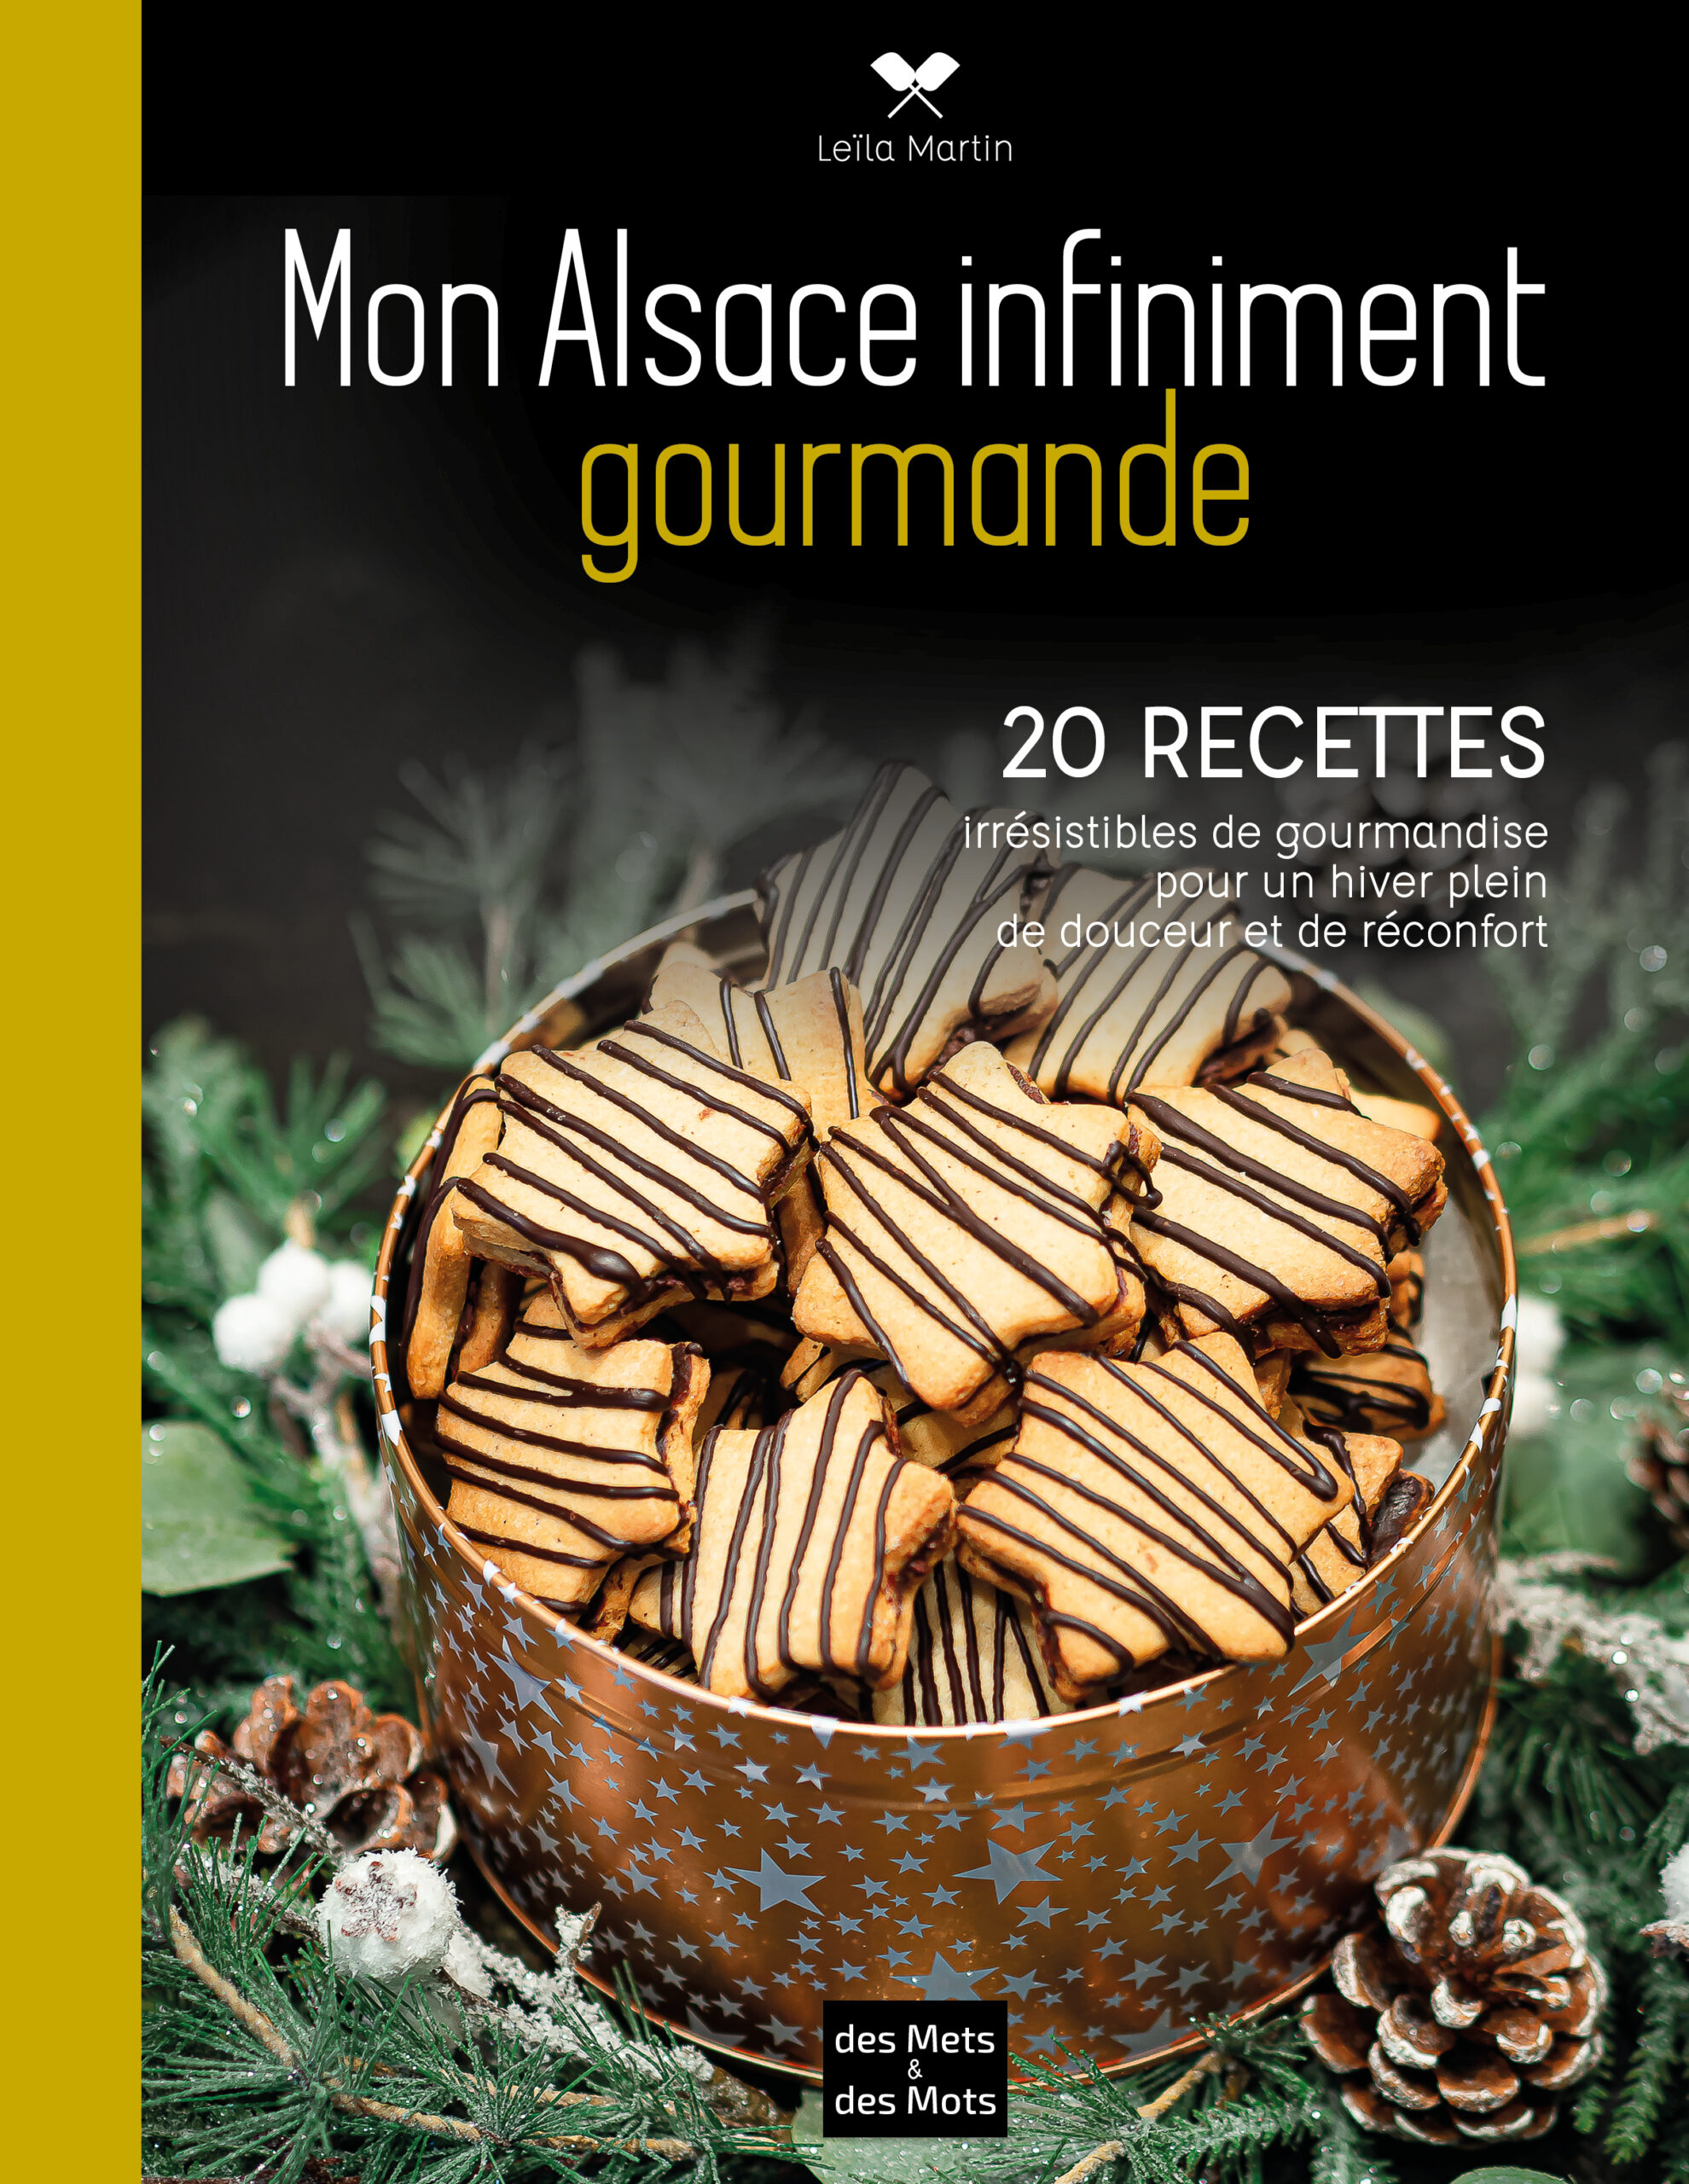 Livre de recettes alsaciennes - Les desserts enchantés de Leïla Martin